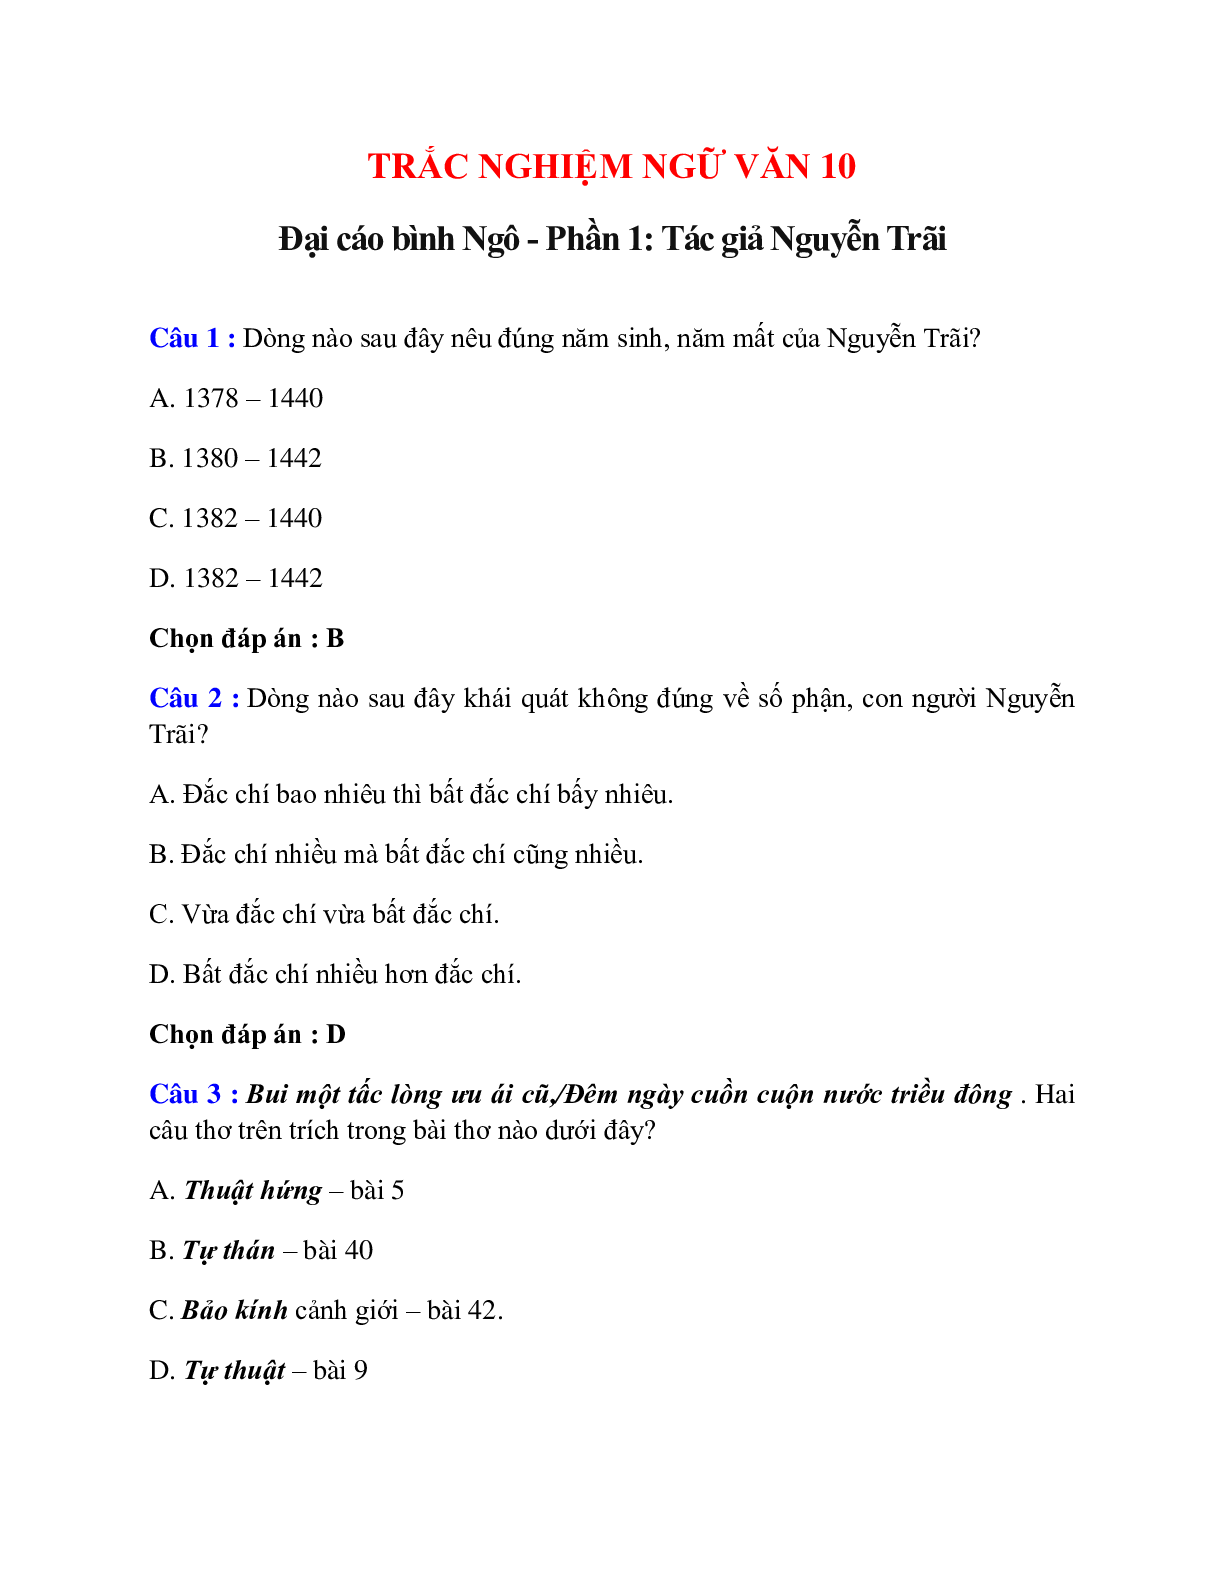 Trắc nghiệm Đại cáo bình Ngô - Phần 1: Tác giả Nguyễn Trãi có đáp án – Ngữ văn lớp 10 (trang 1)